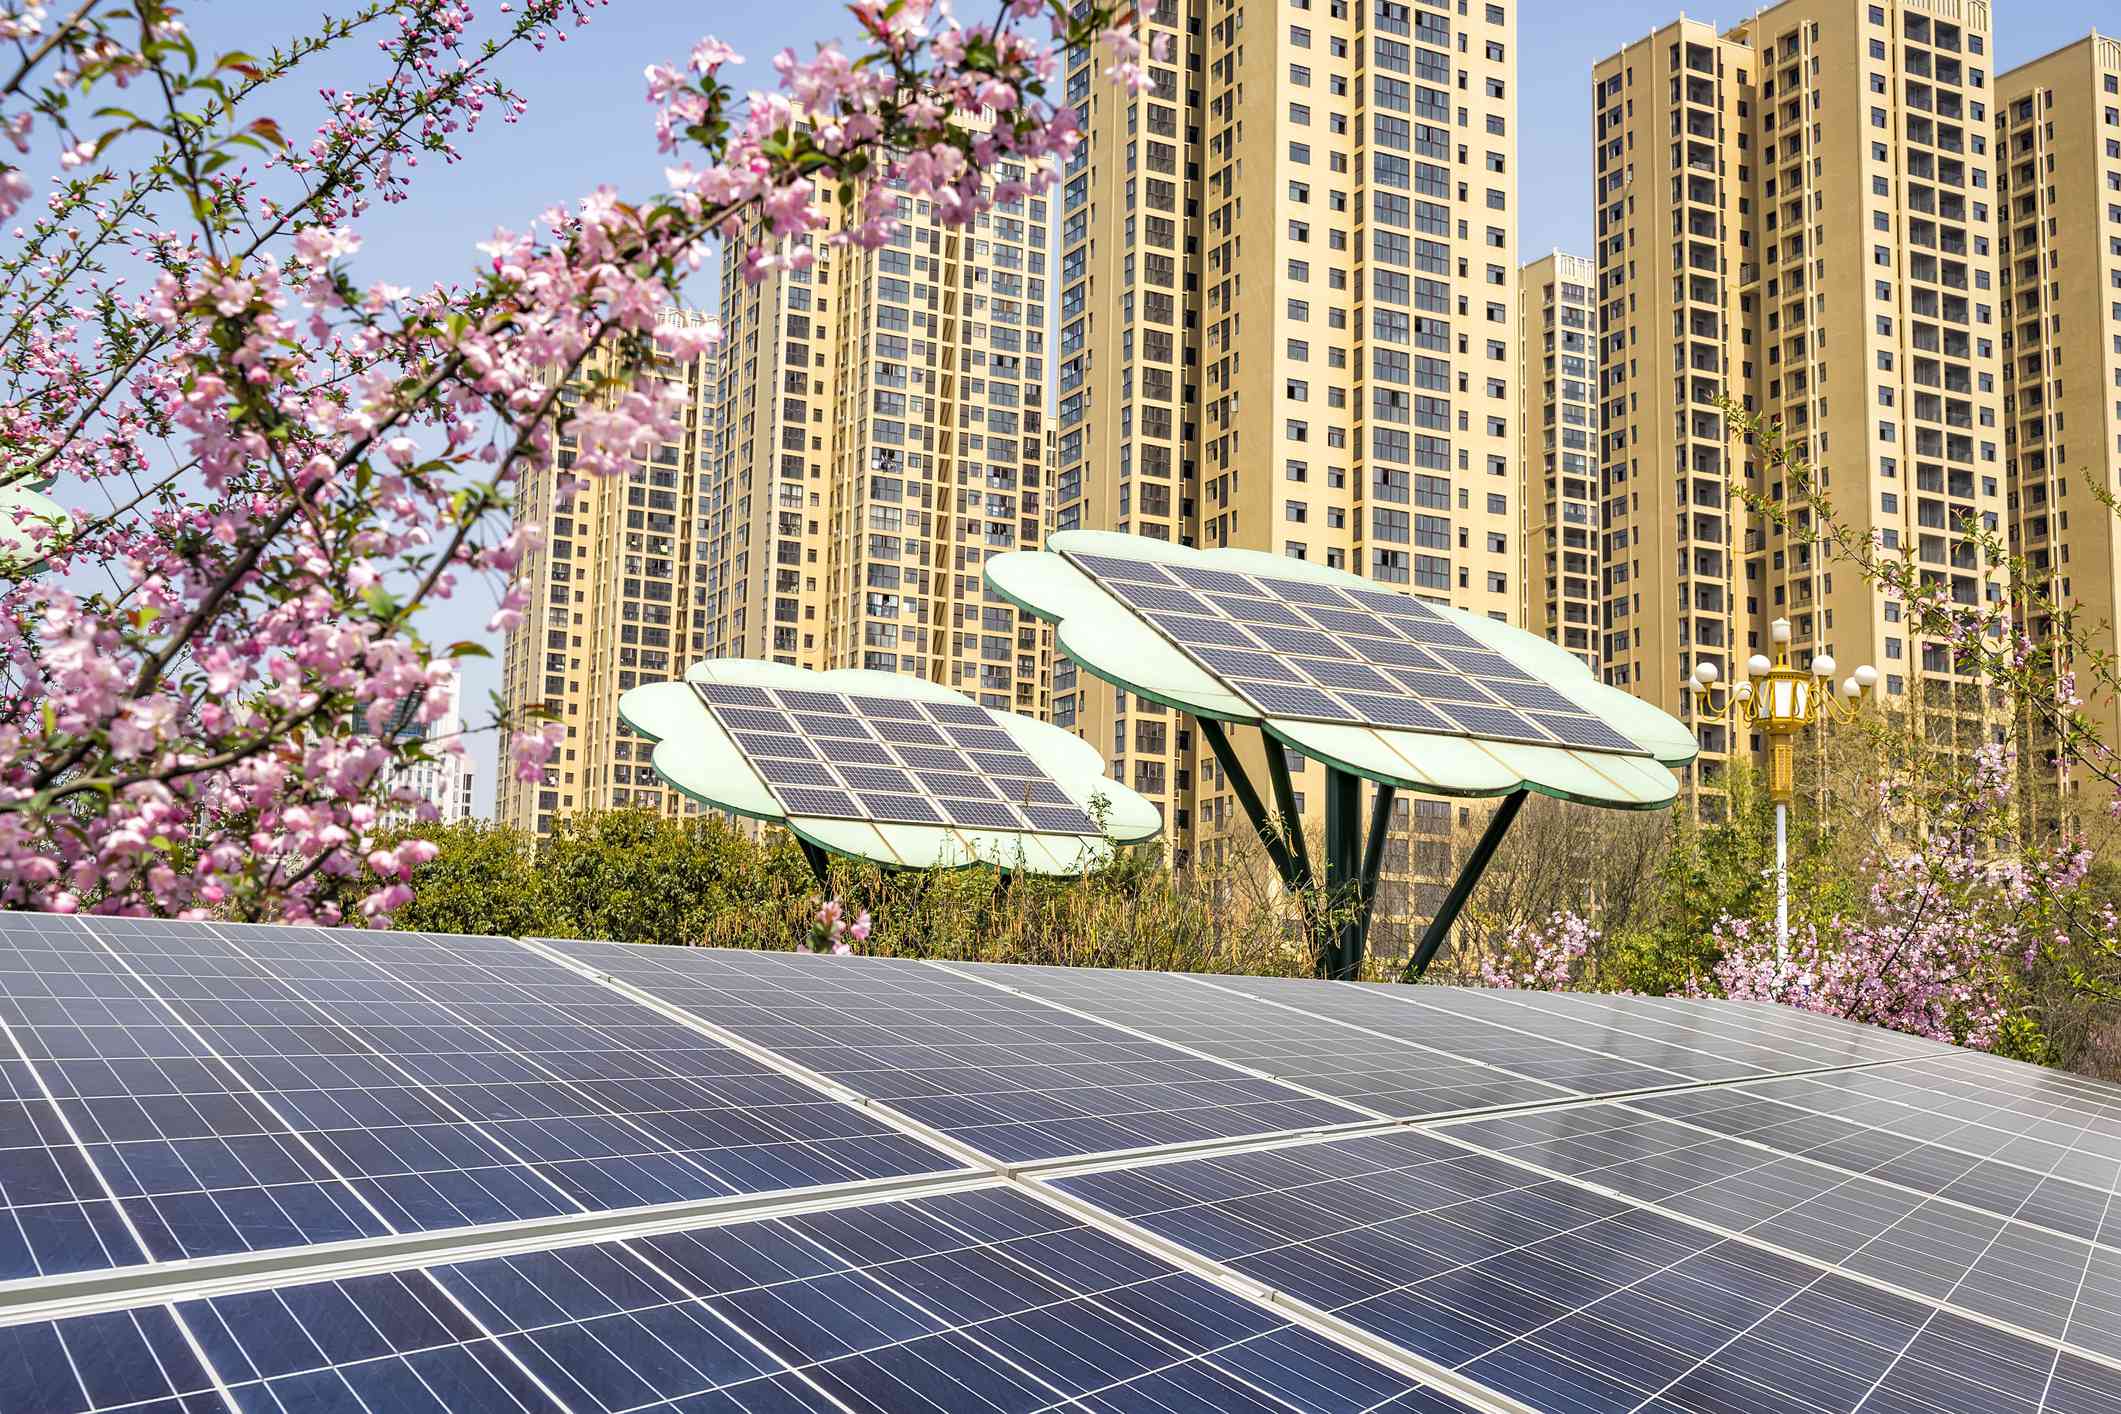 Paneles solares en la azotea con árboles solares en forma de flor, flores rosas y altos edificios de fondo